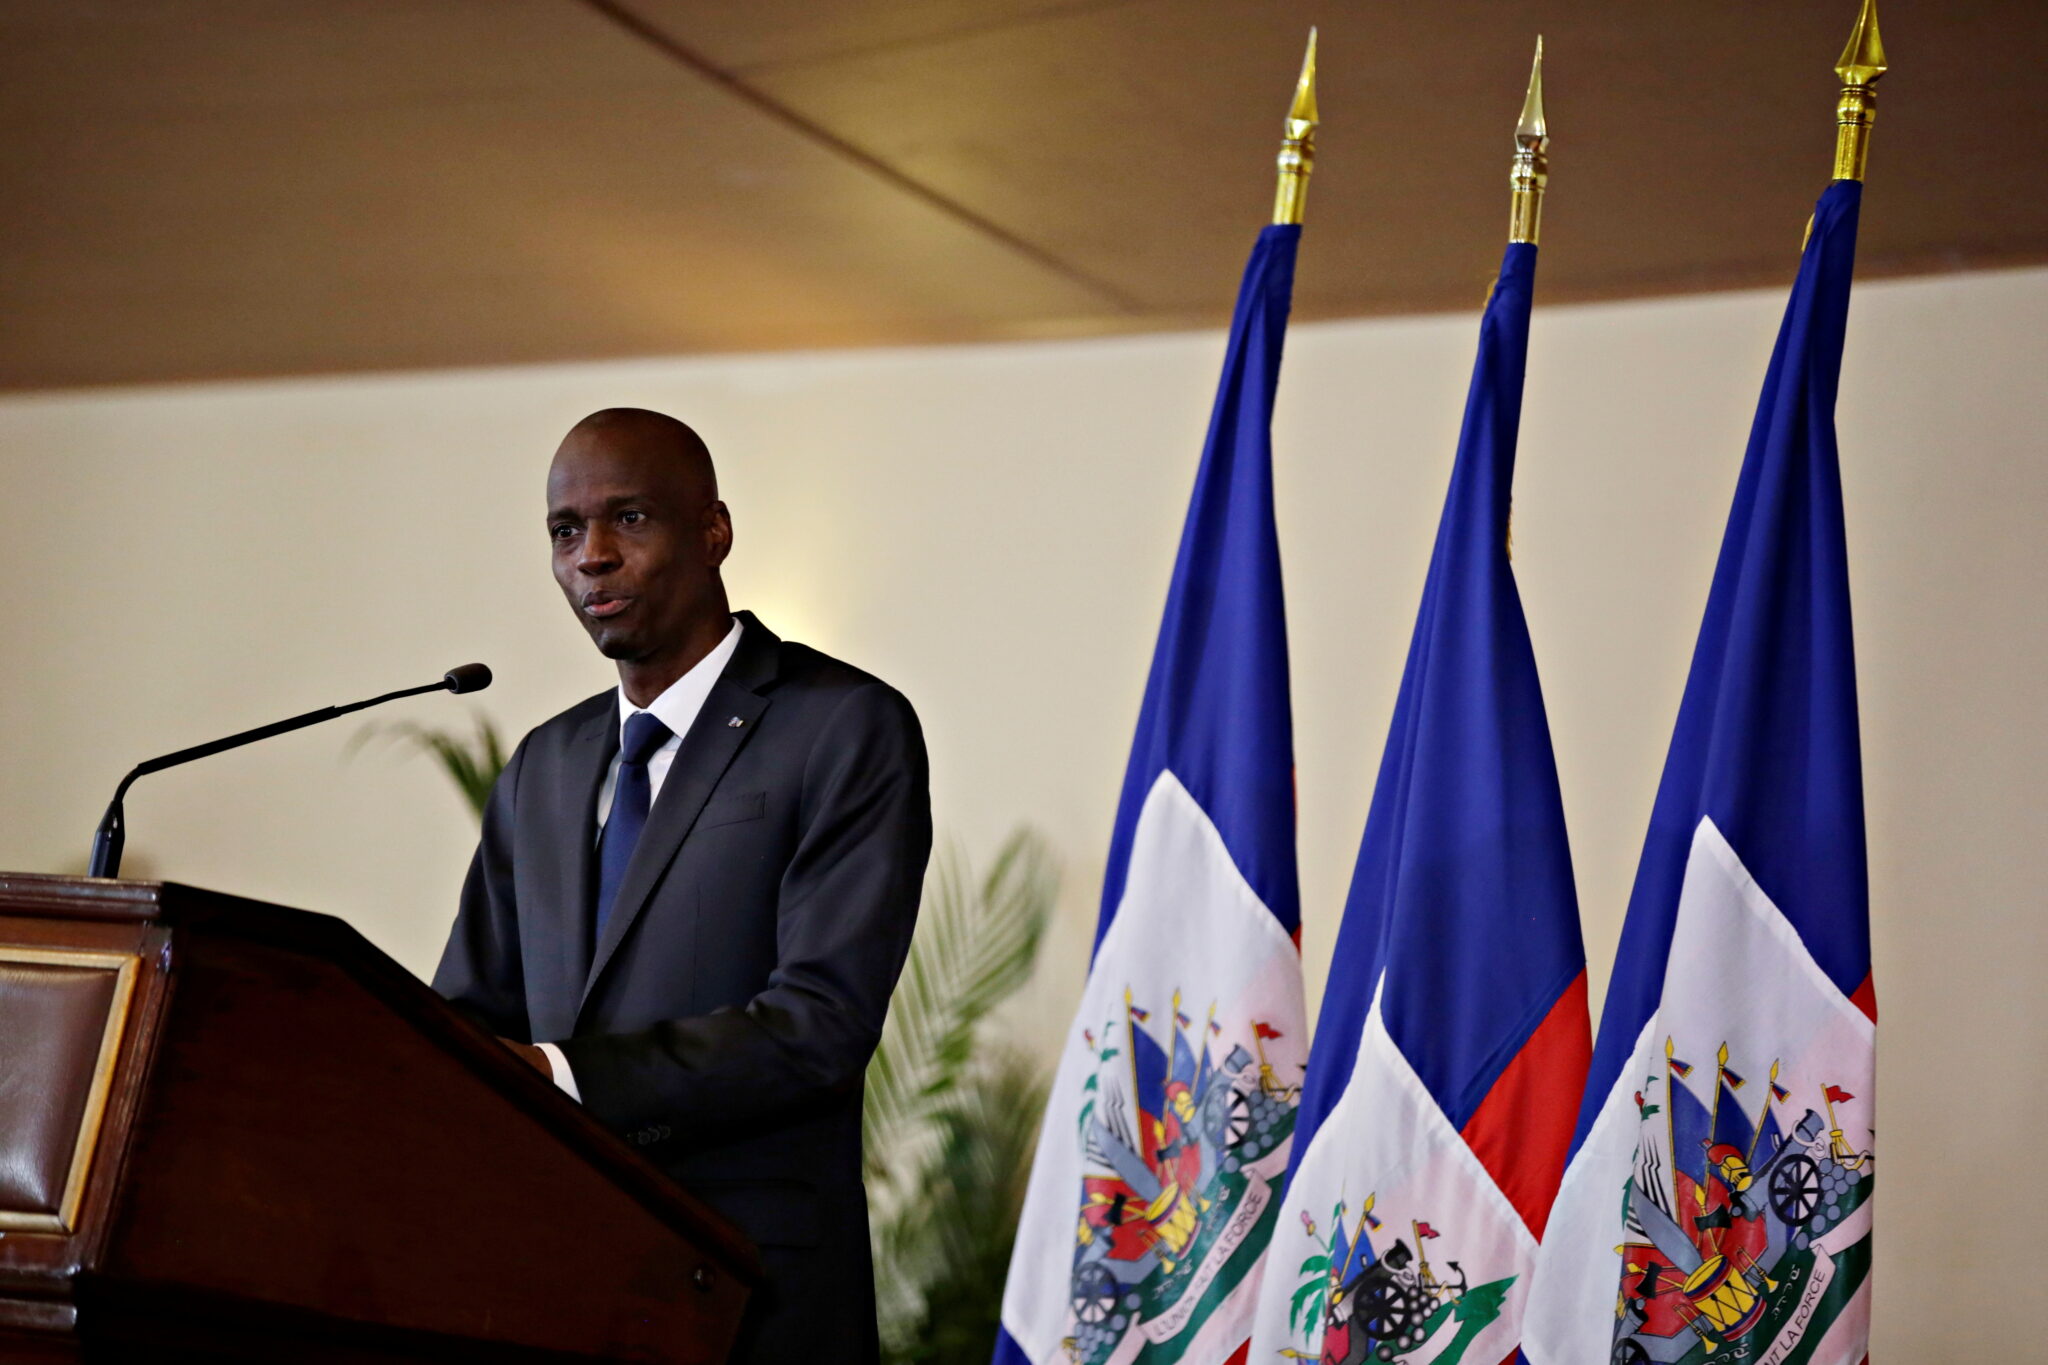 "โฌเวแนล โมอิส" ผู้นำเฮติ ถูกลอบสังหารเสียชีวิตคาบ้านพัก